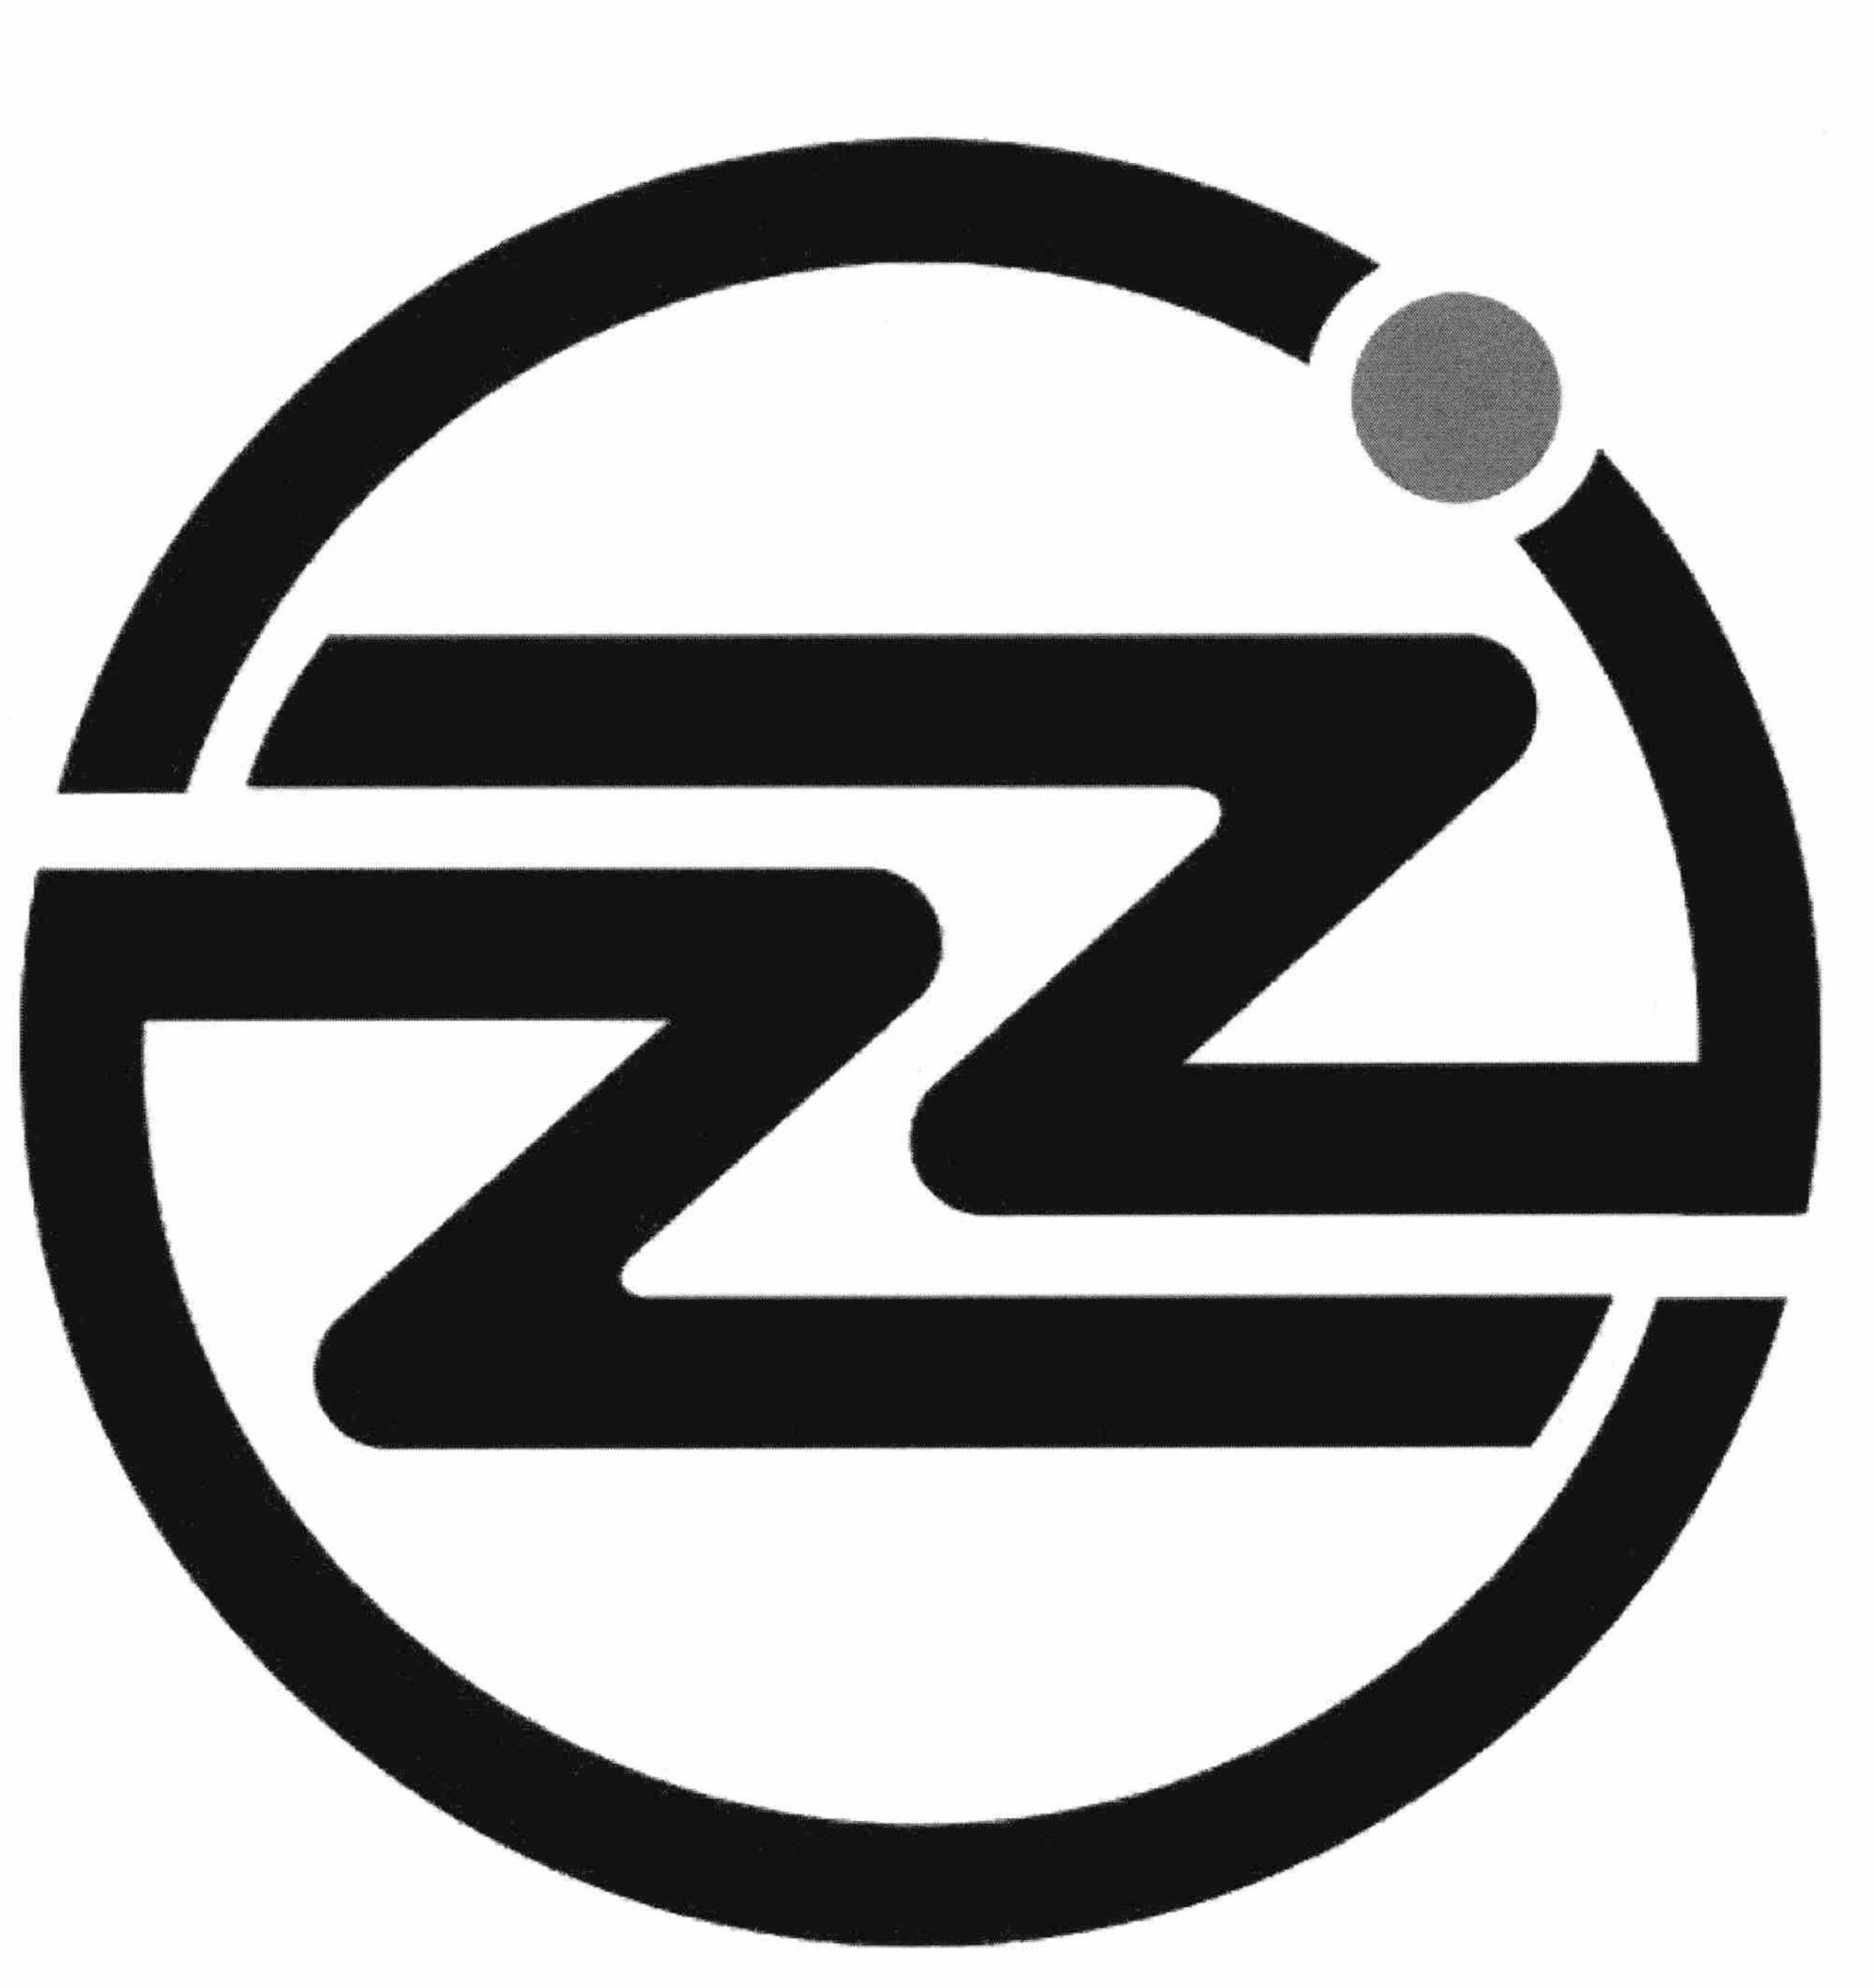  ZZ